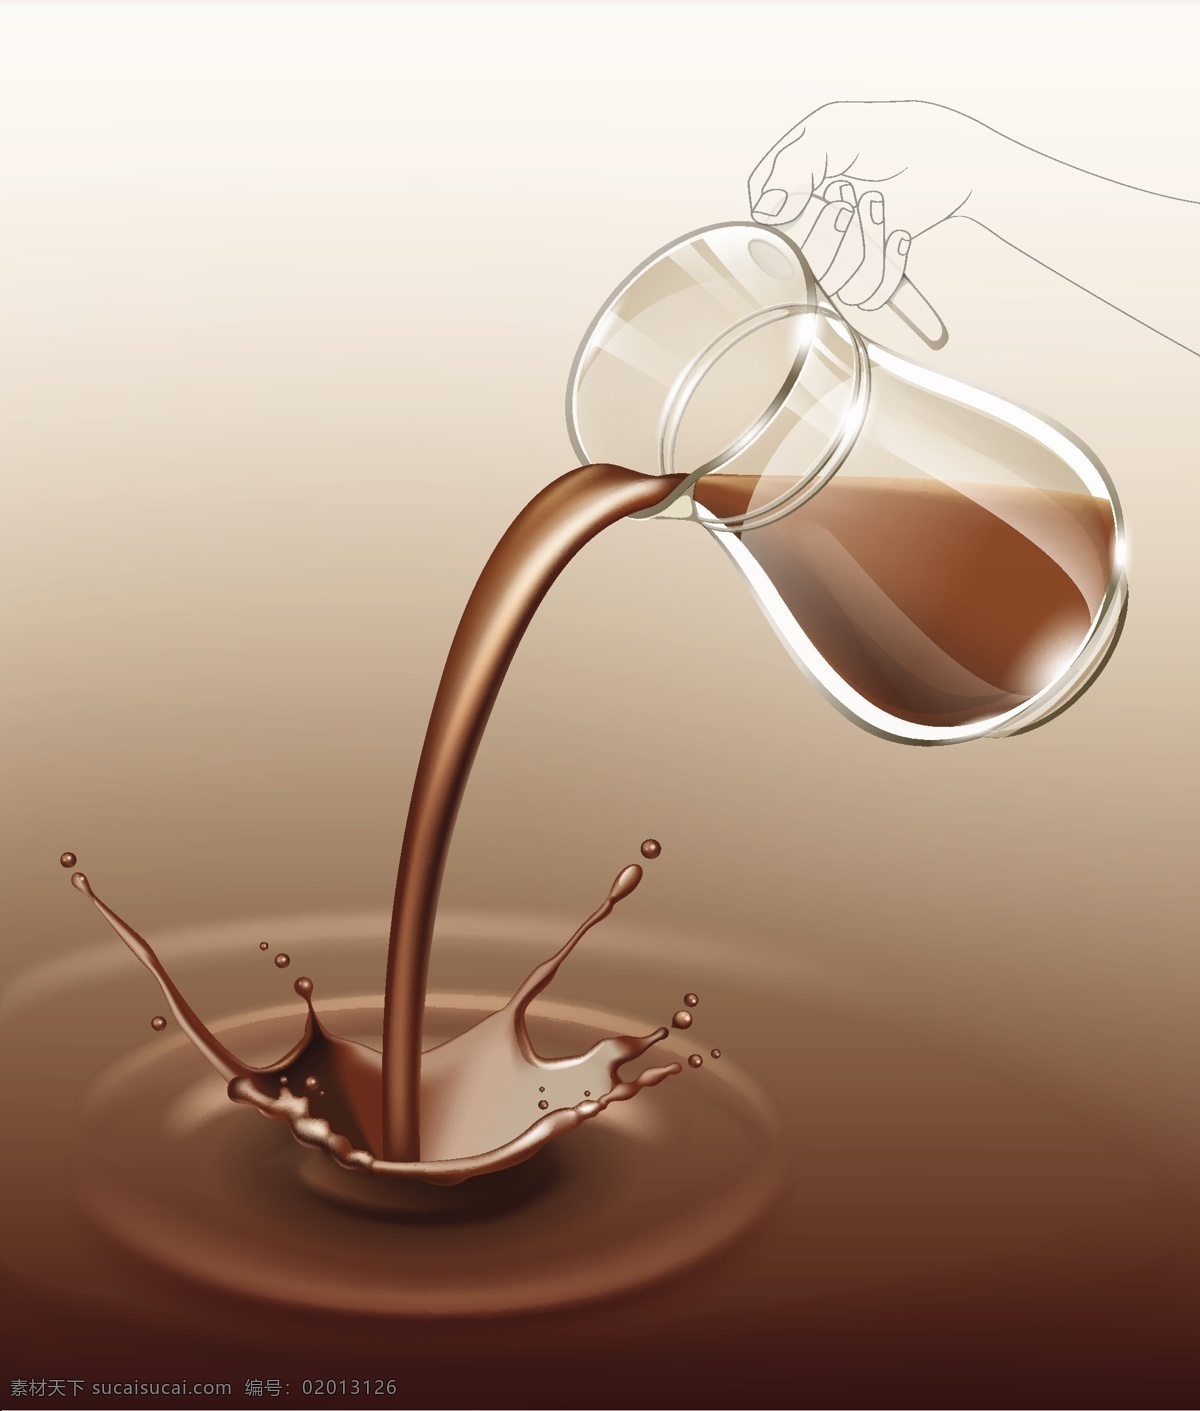 巧克力 牛奶 巧克力海报 巧克力展板 巧克力宣传单 巧克力盒 巧克力易拉宝 巧克力包装 牛奶巧克力 巧克力促销 德芙巧克力 巧克力糖 巧克力饼干 巧克力奶茶 咖啡 巧克力广告 糖 心形巧克力 情人节巧克力 巧克力灯箱 巧克力甜点 巧克力点心 巧克力蛋糕